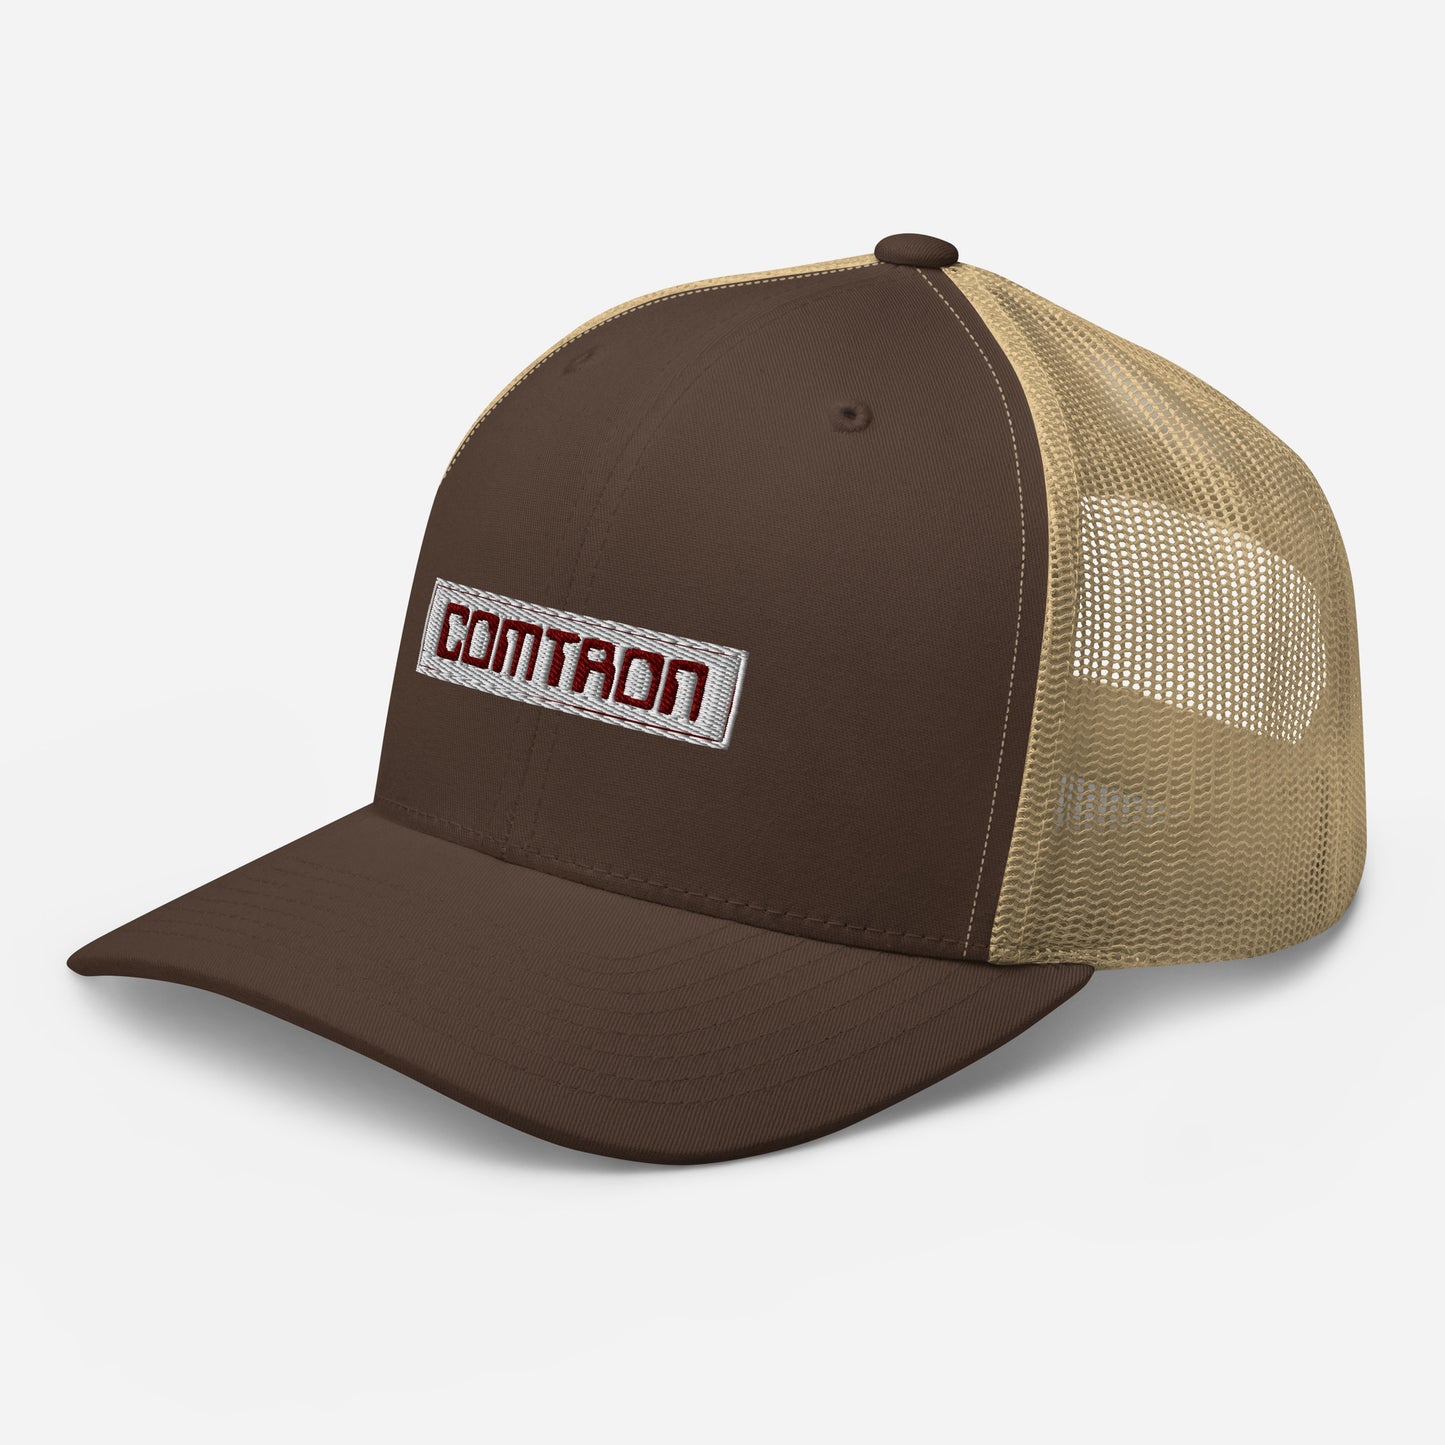 Comtron Trucker's Hat